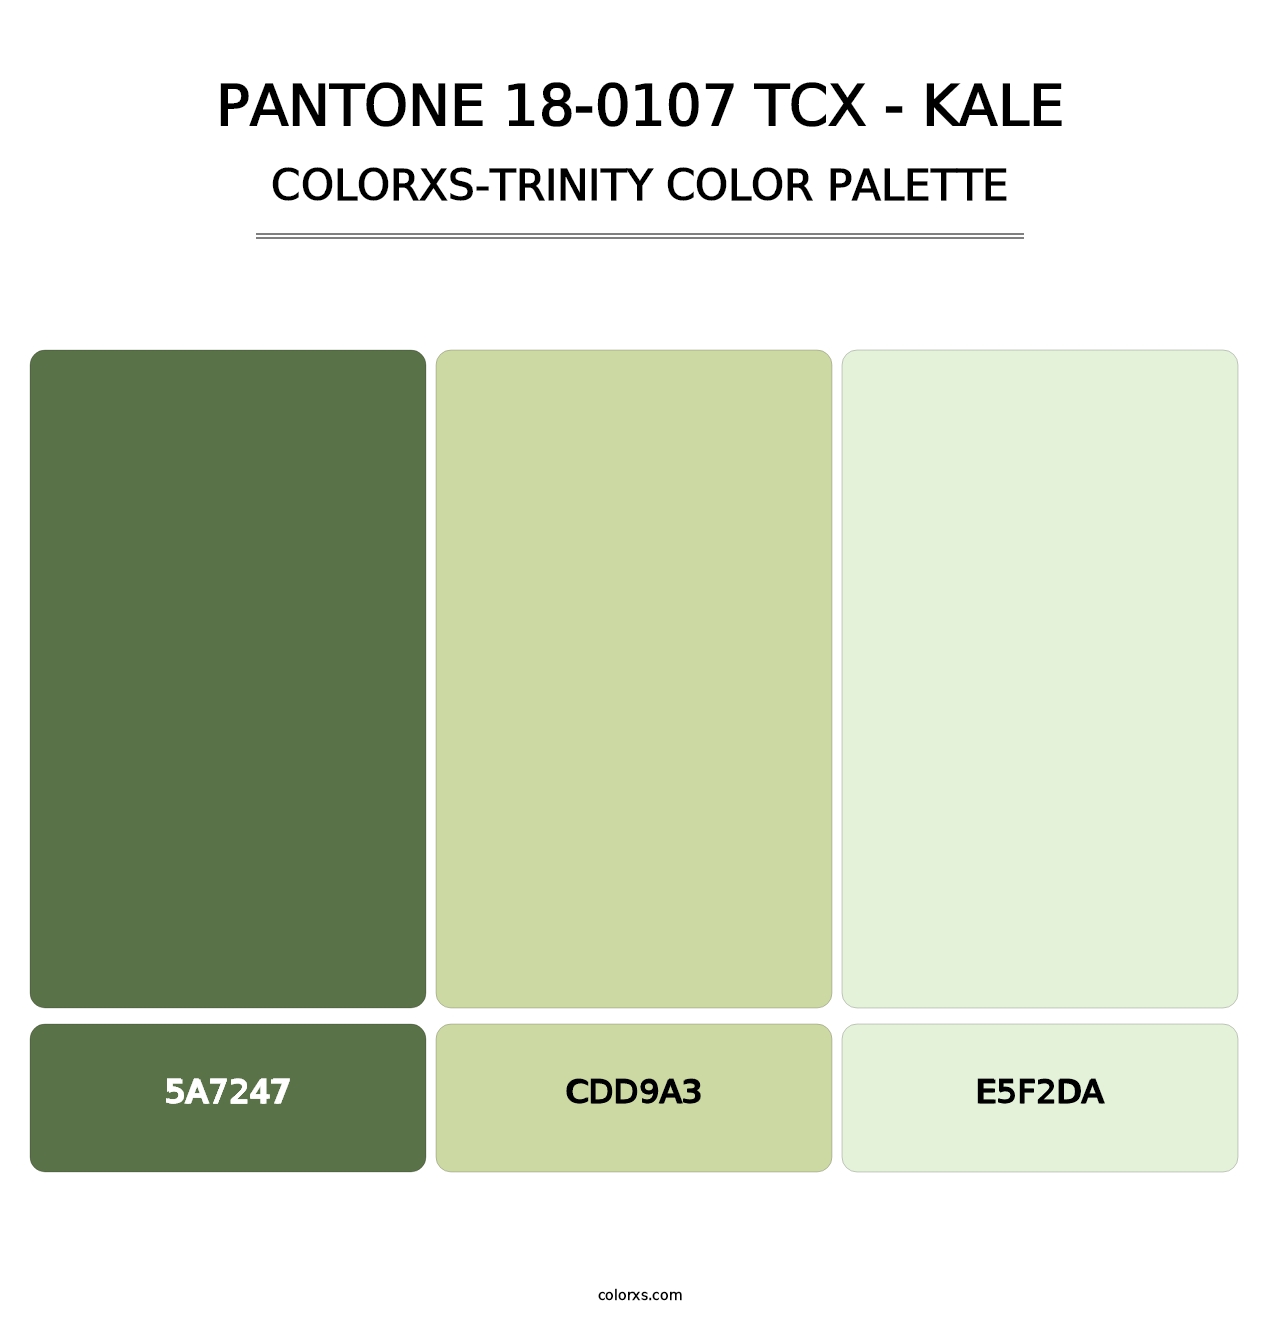 PANTONE 18-0107 TCX - Kale - Colorxs Trinity Palette